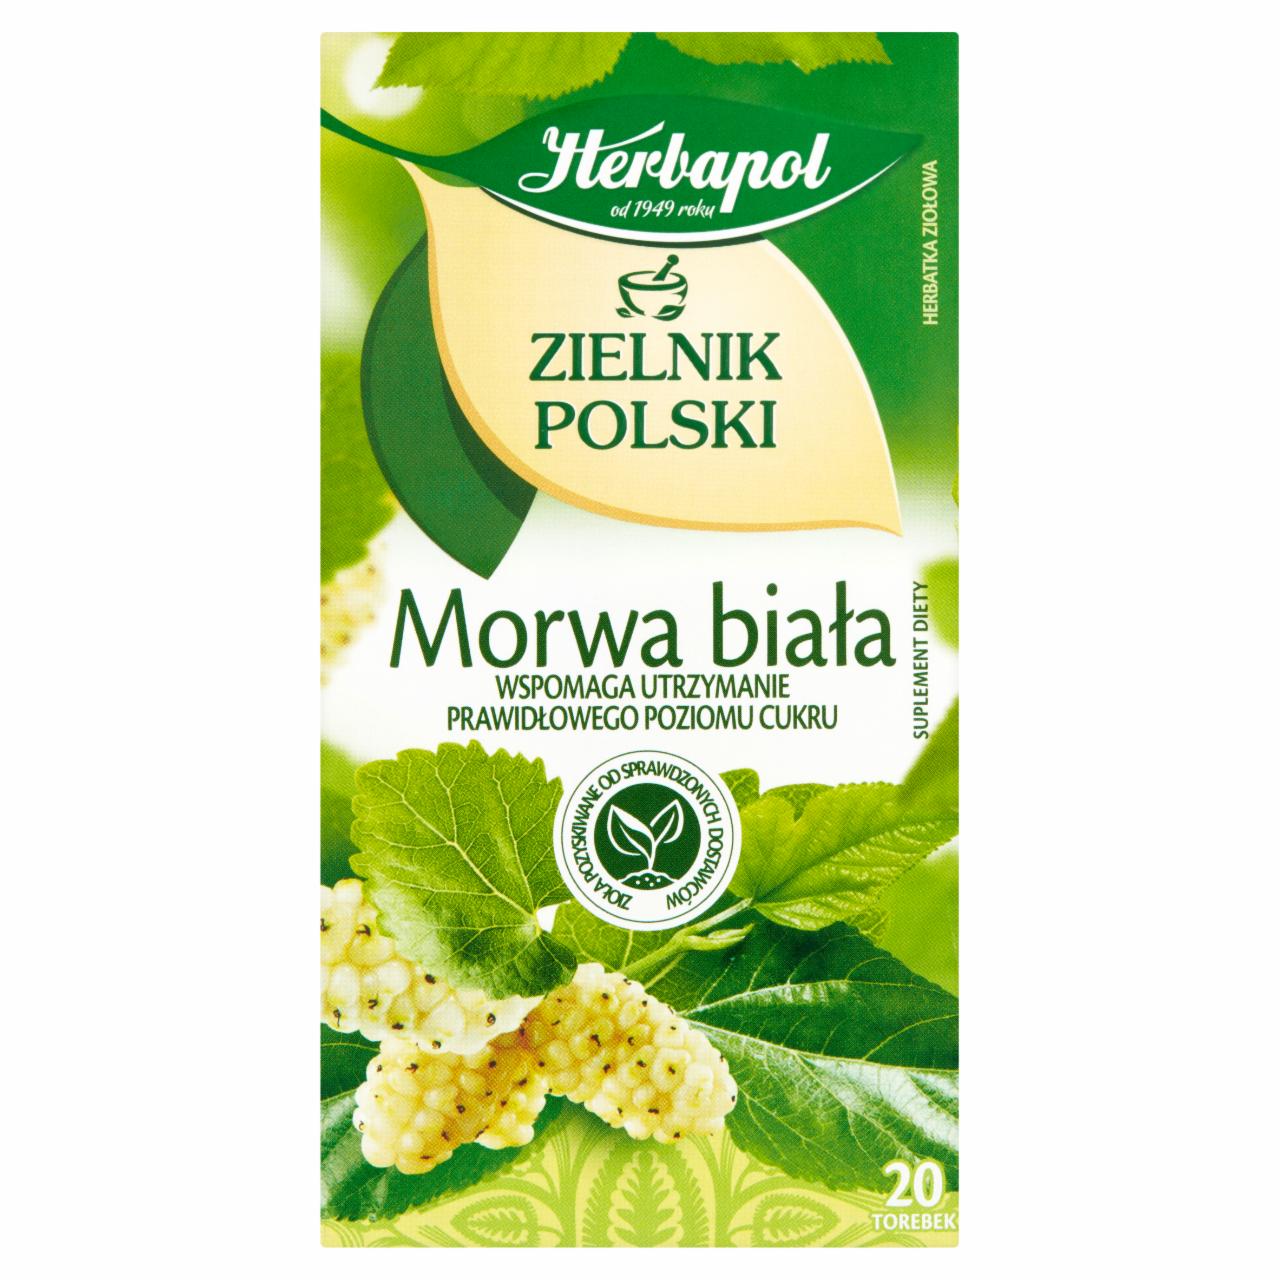 Zdjęcia - Herbapol Zielnik Polski Suplement diety herbatka ziołowa morwa biała 40 g (20 x 2 g)